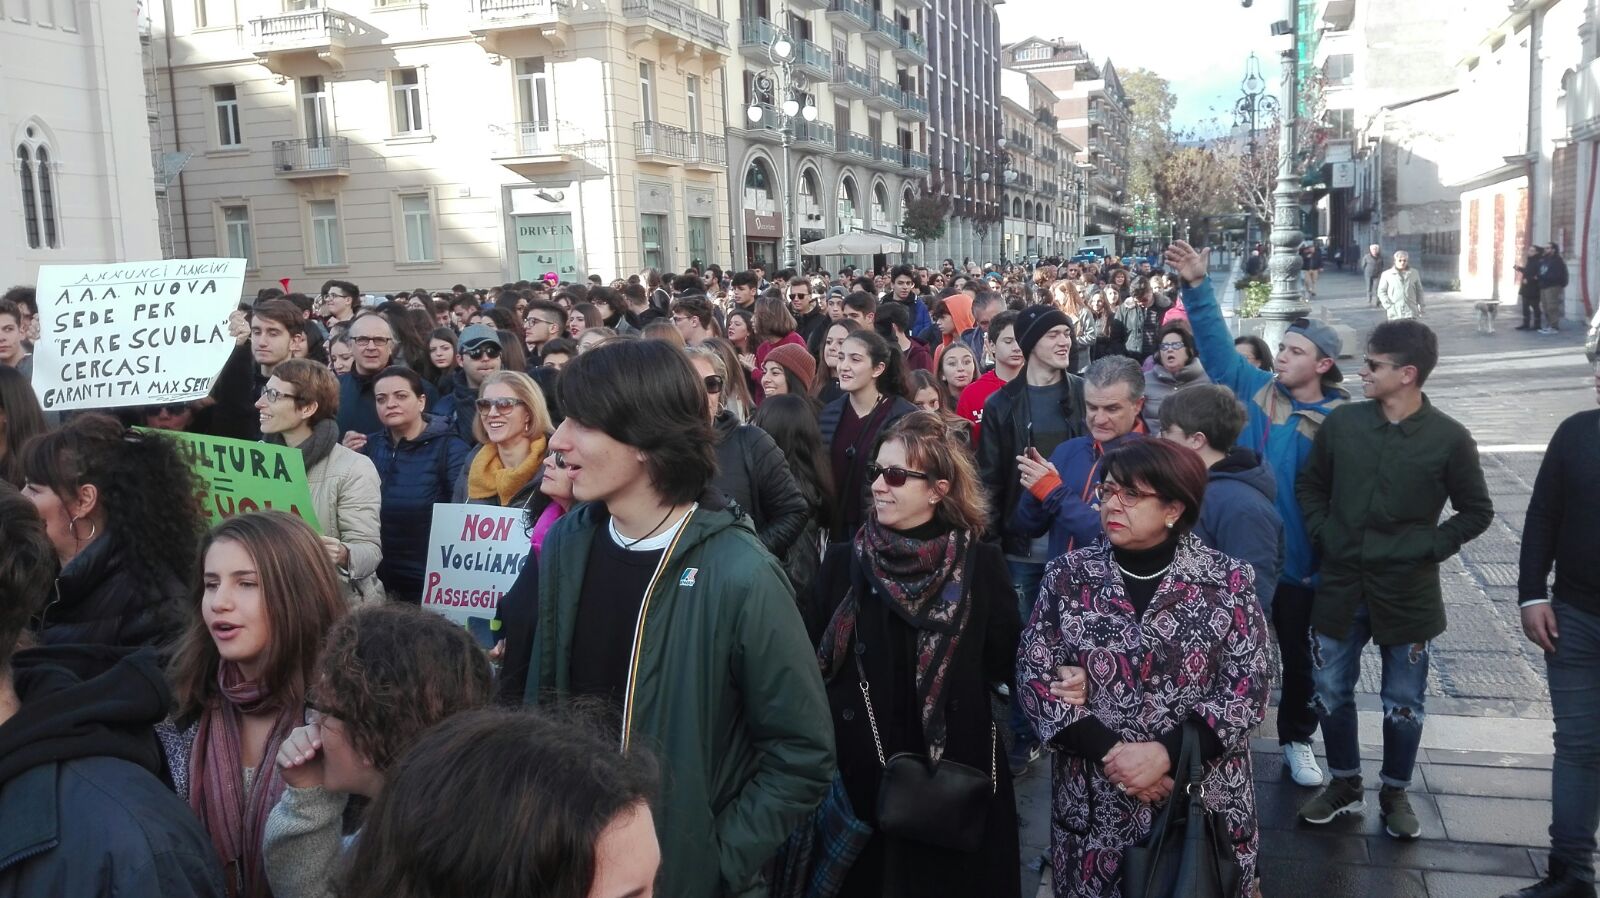 Avellino| “Mancini” in piazza: slogan contro la Provincia